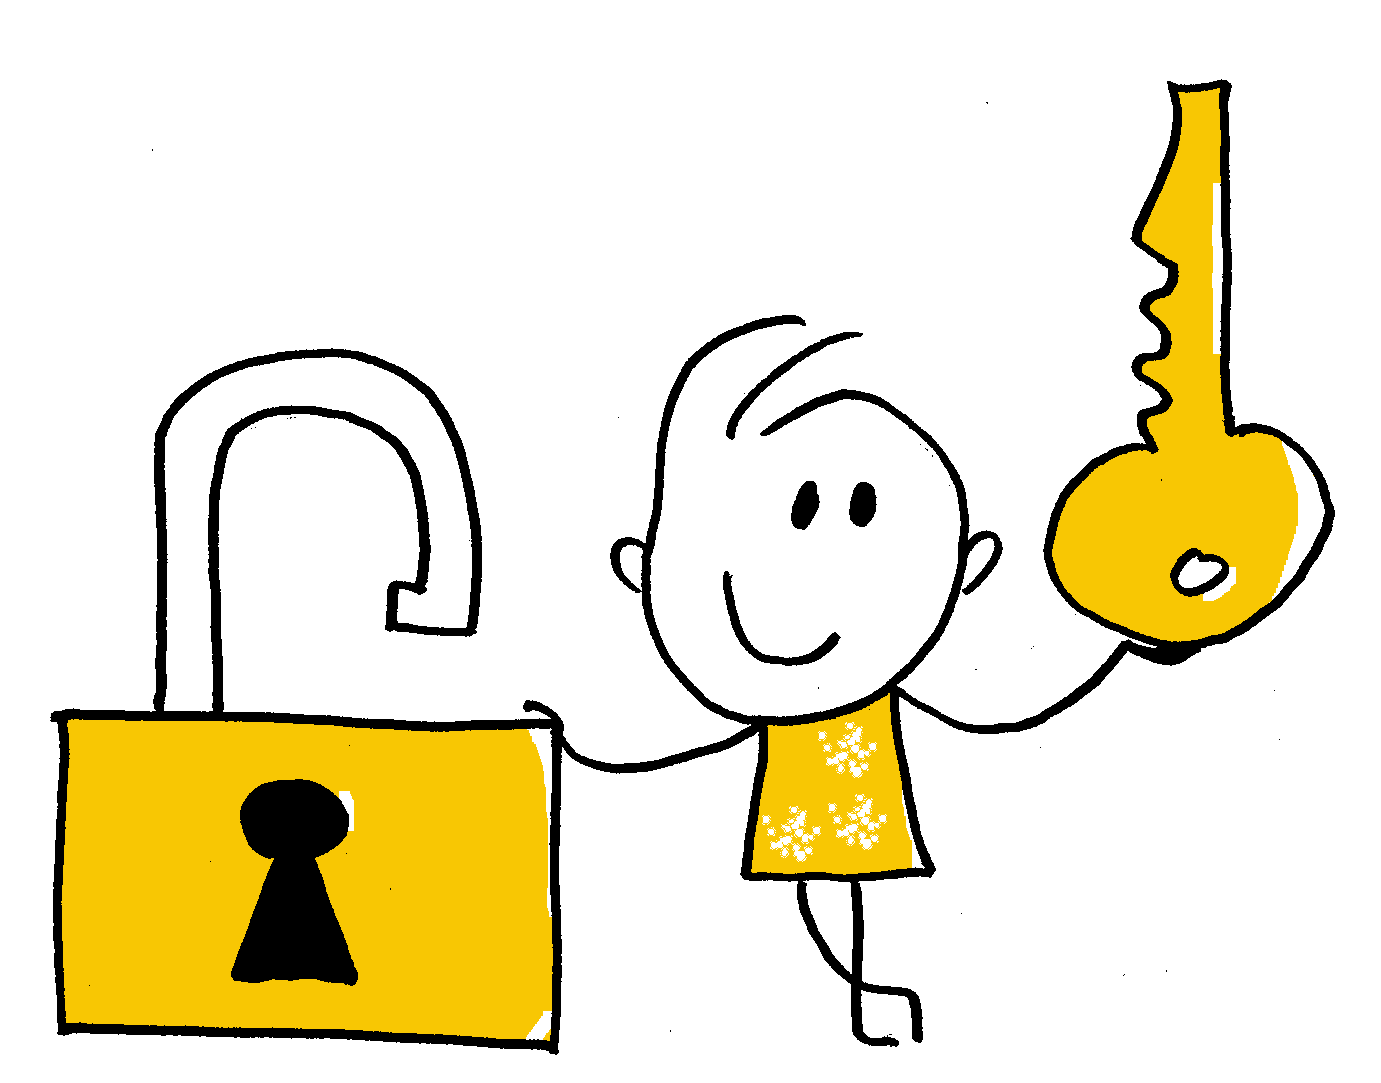 Zeichnung einer glücklichen Person mit Schlüssel und Schloss, Metapher für Lösungen, Zugang und Sicherheit in der Einzeltherapie.